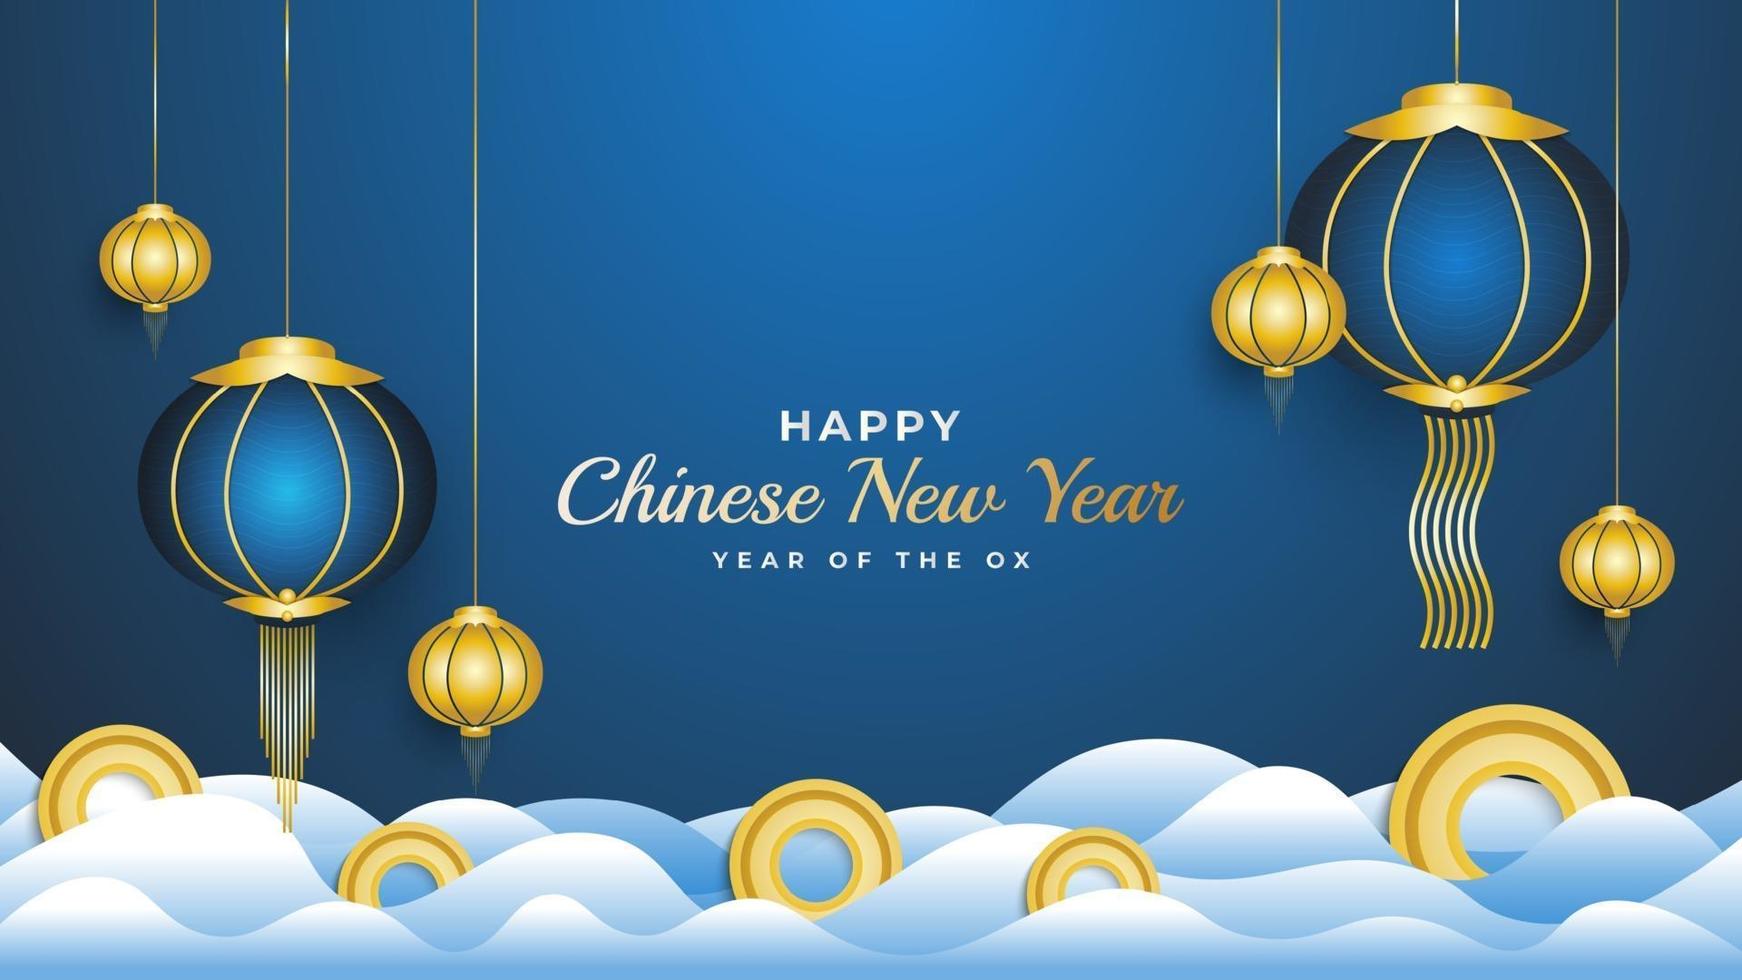 banner de feliz ano novo chinês com lanternas azuis e moedas de ouro na nuvem isolada no fundo azul vetor